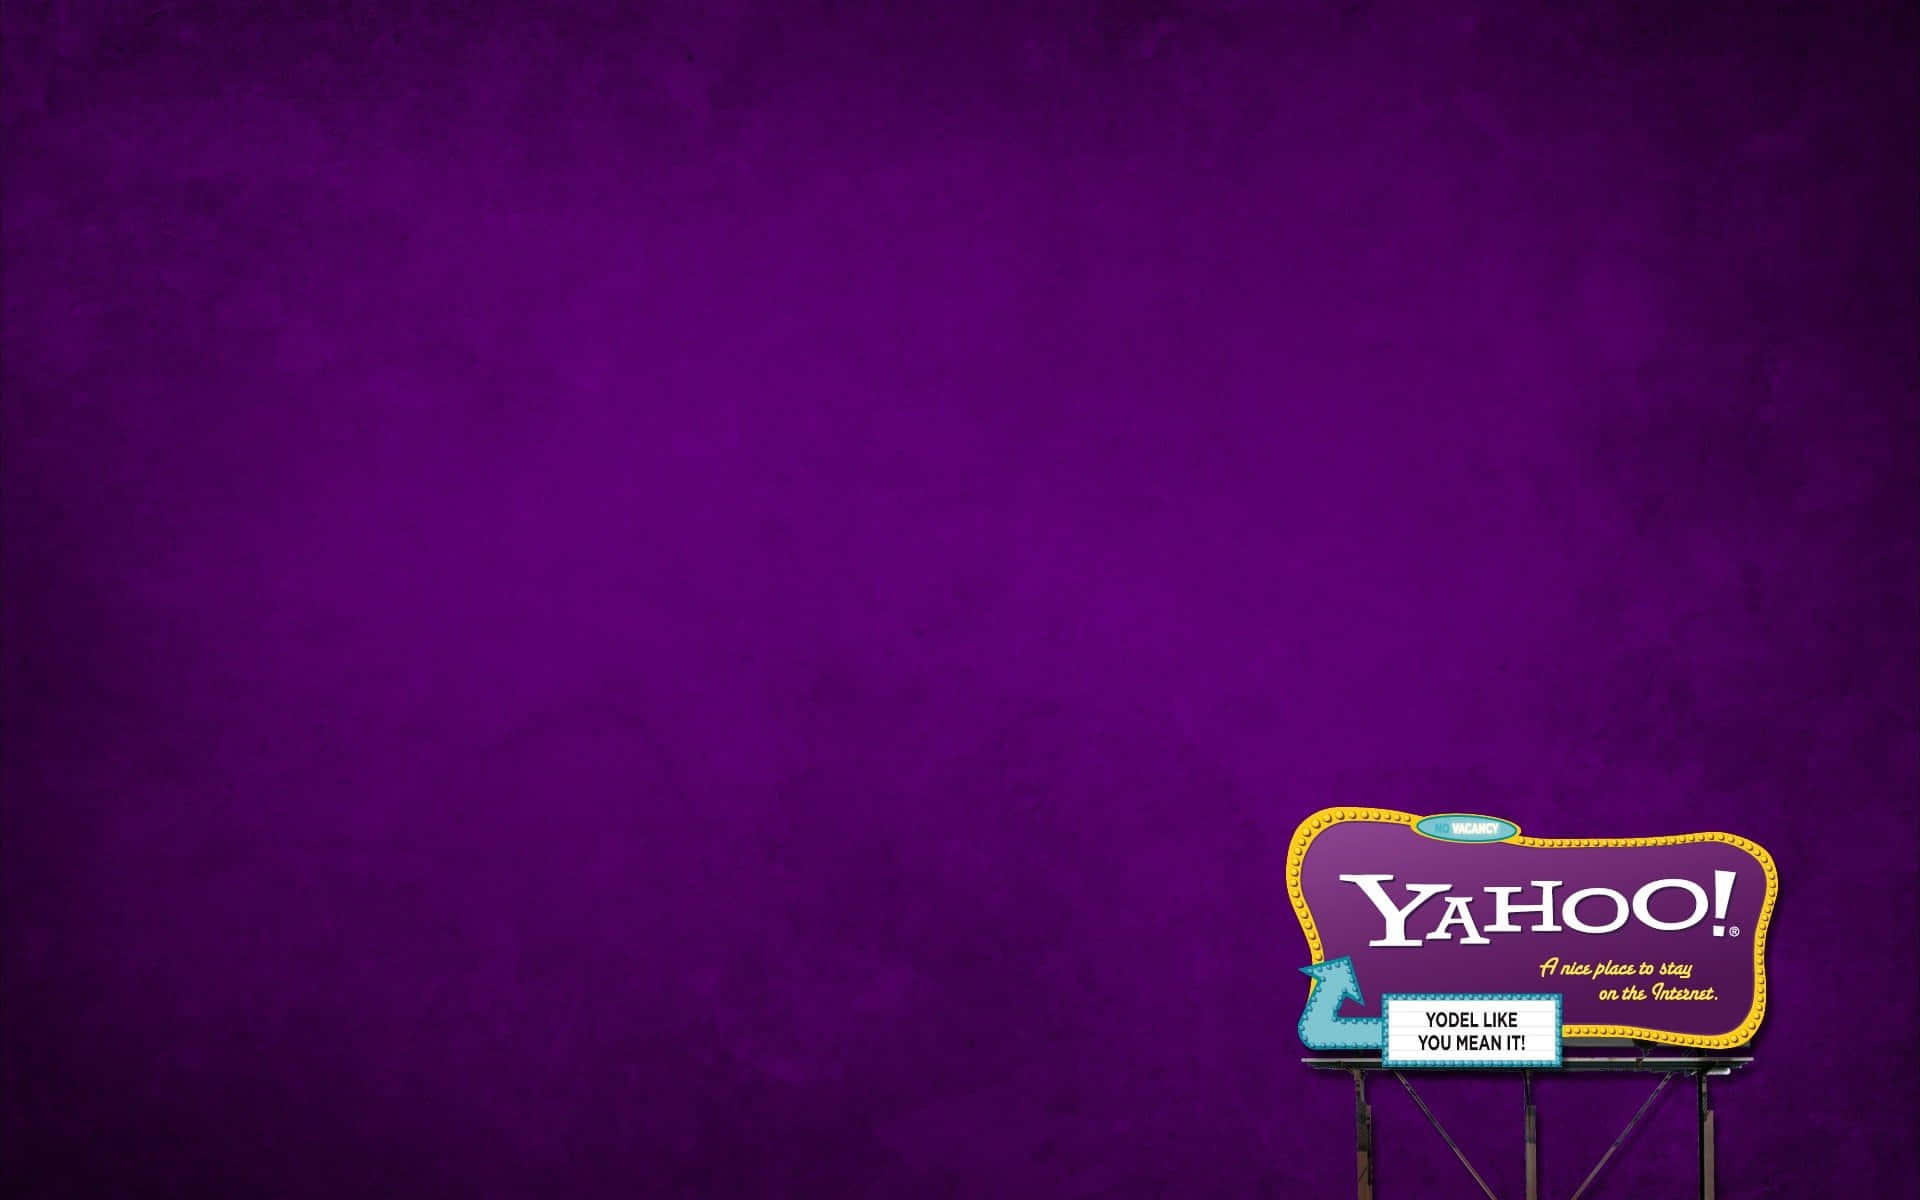 Steigernsie Ihre Web-suchen Auf Die Nächste Stufe Mit Yahoo!